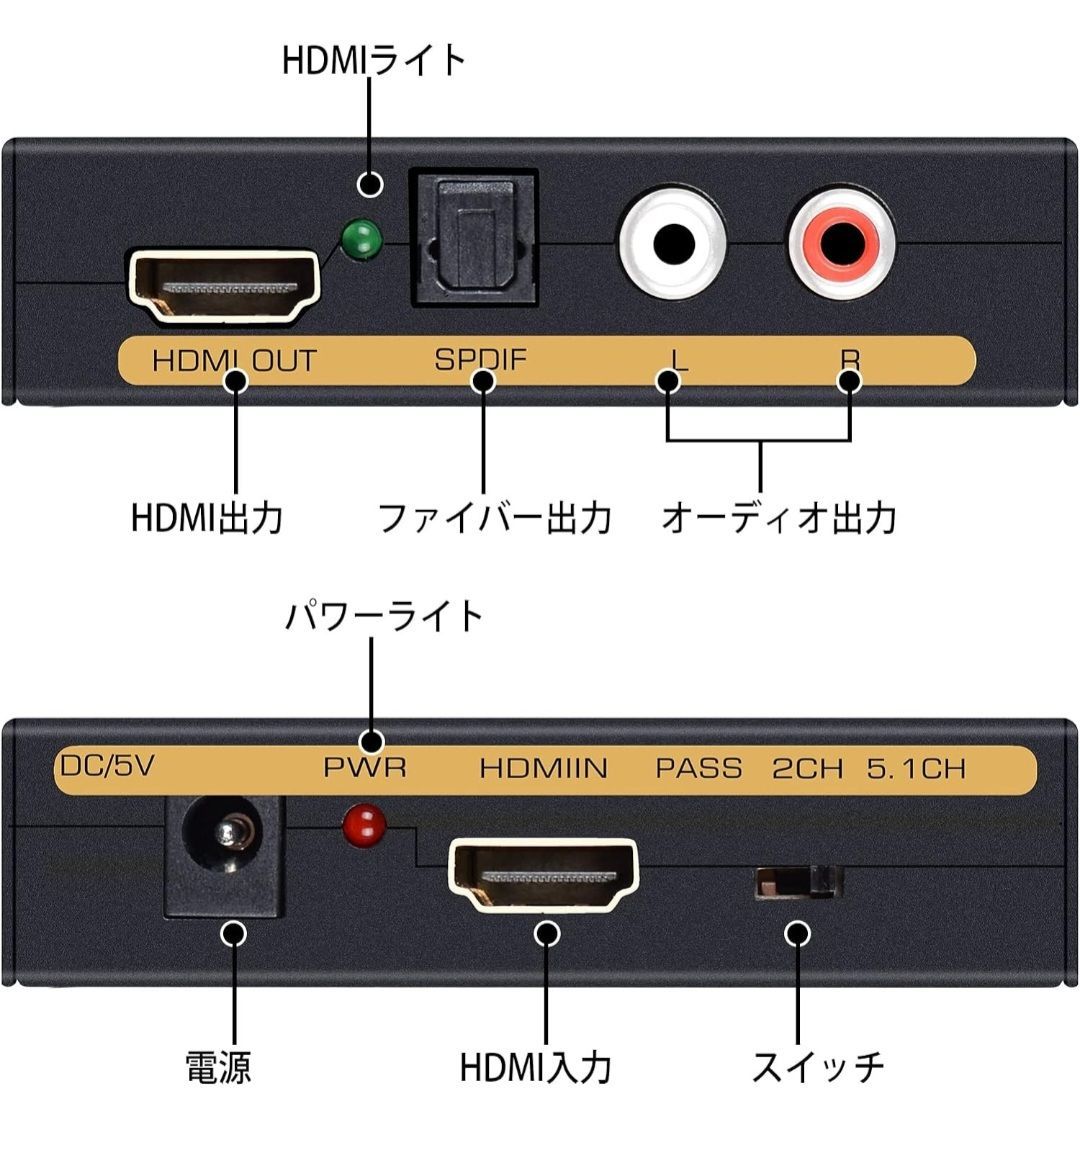 avedio links 4K HDMI 音声分離器 HDMIデジタルオーディオ分離器 SPDIF